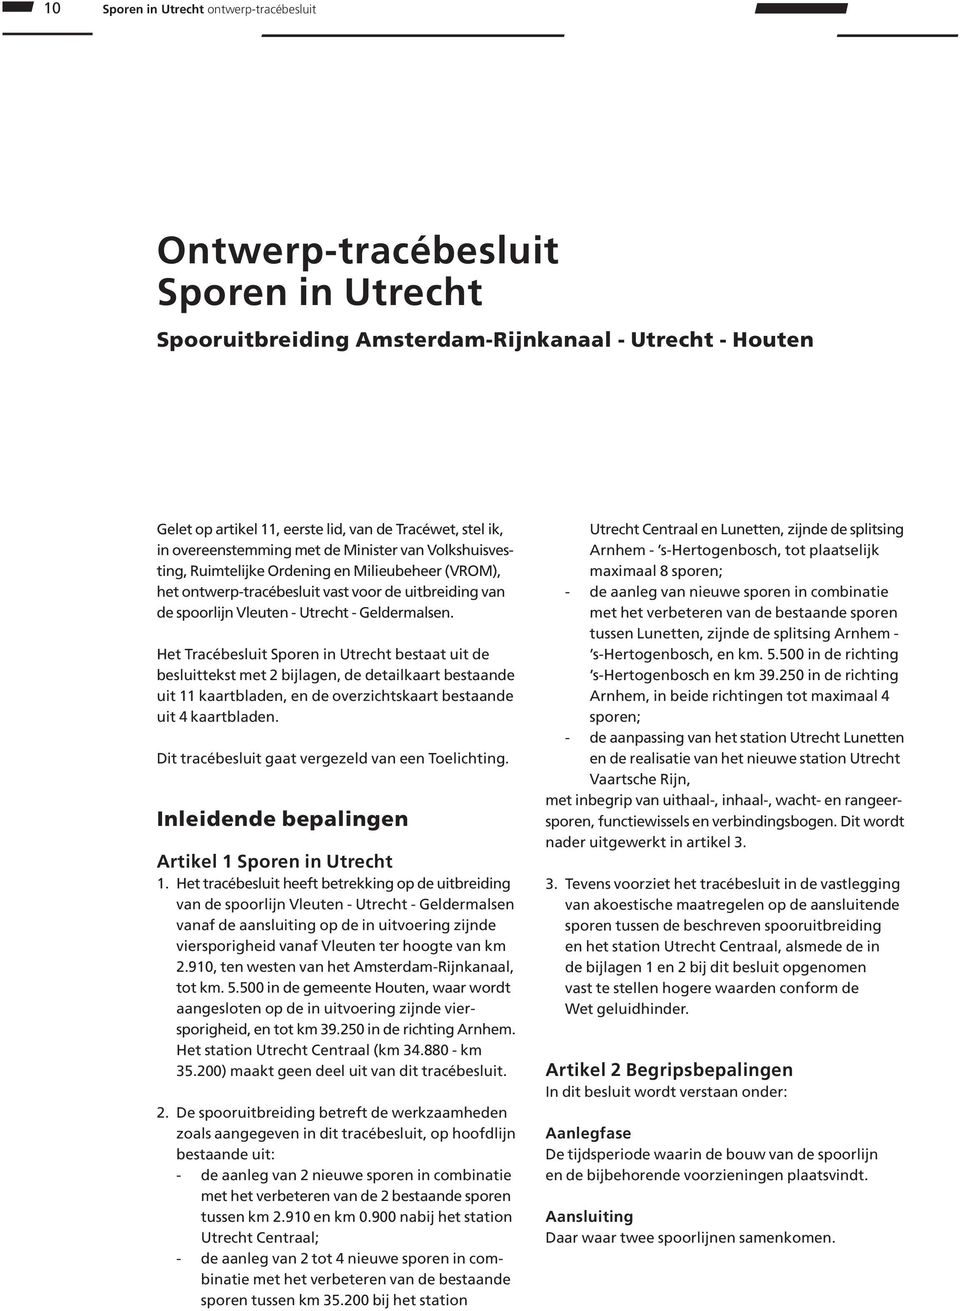 Het Tracébesluit Sporen in Utrecht bestaat uit de besluittekst met 2 bijlagen, de detailkaart bestaande uit 11 kaartbladen, en de overzichtskaart bestaande uit 4 kaartbladen.